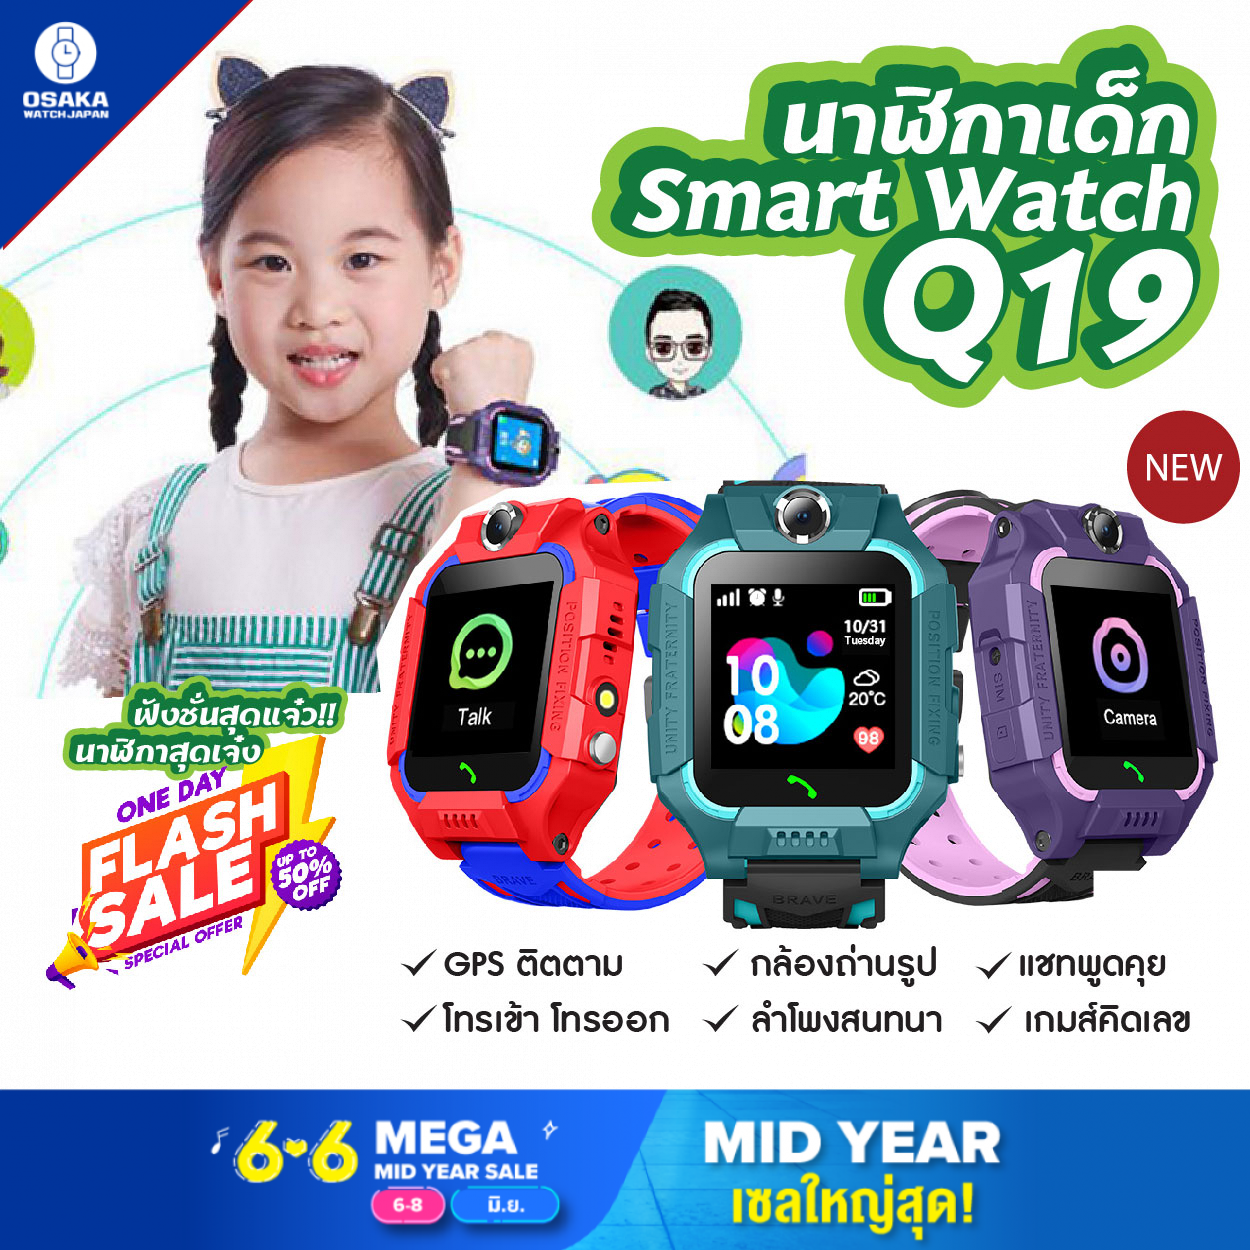 นาฬิกาเด็ก รุ่น Q19 เมนูไทย ใส่ซิมได้ โทรได้ พร้อมระบบ GPS ติดตามตำแหน่ง Kid Smart Watch นาฬิกาป้องกันเด็กหาย ไอโม่ imoo ส่งจากประเทศไทย